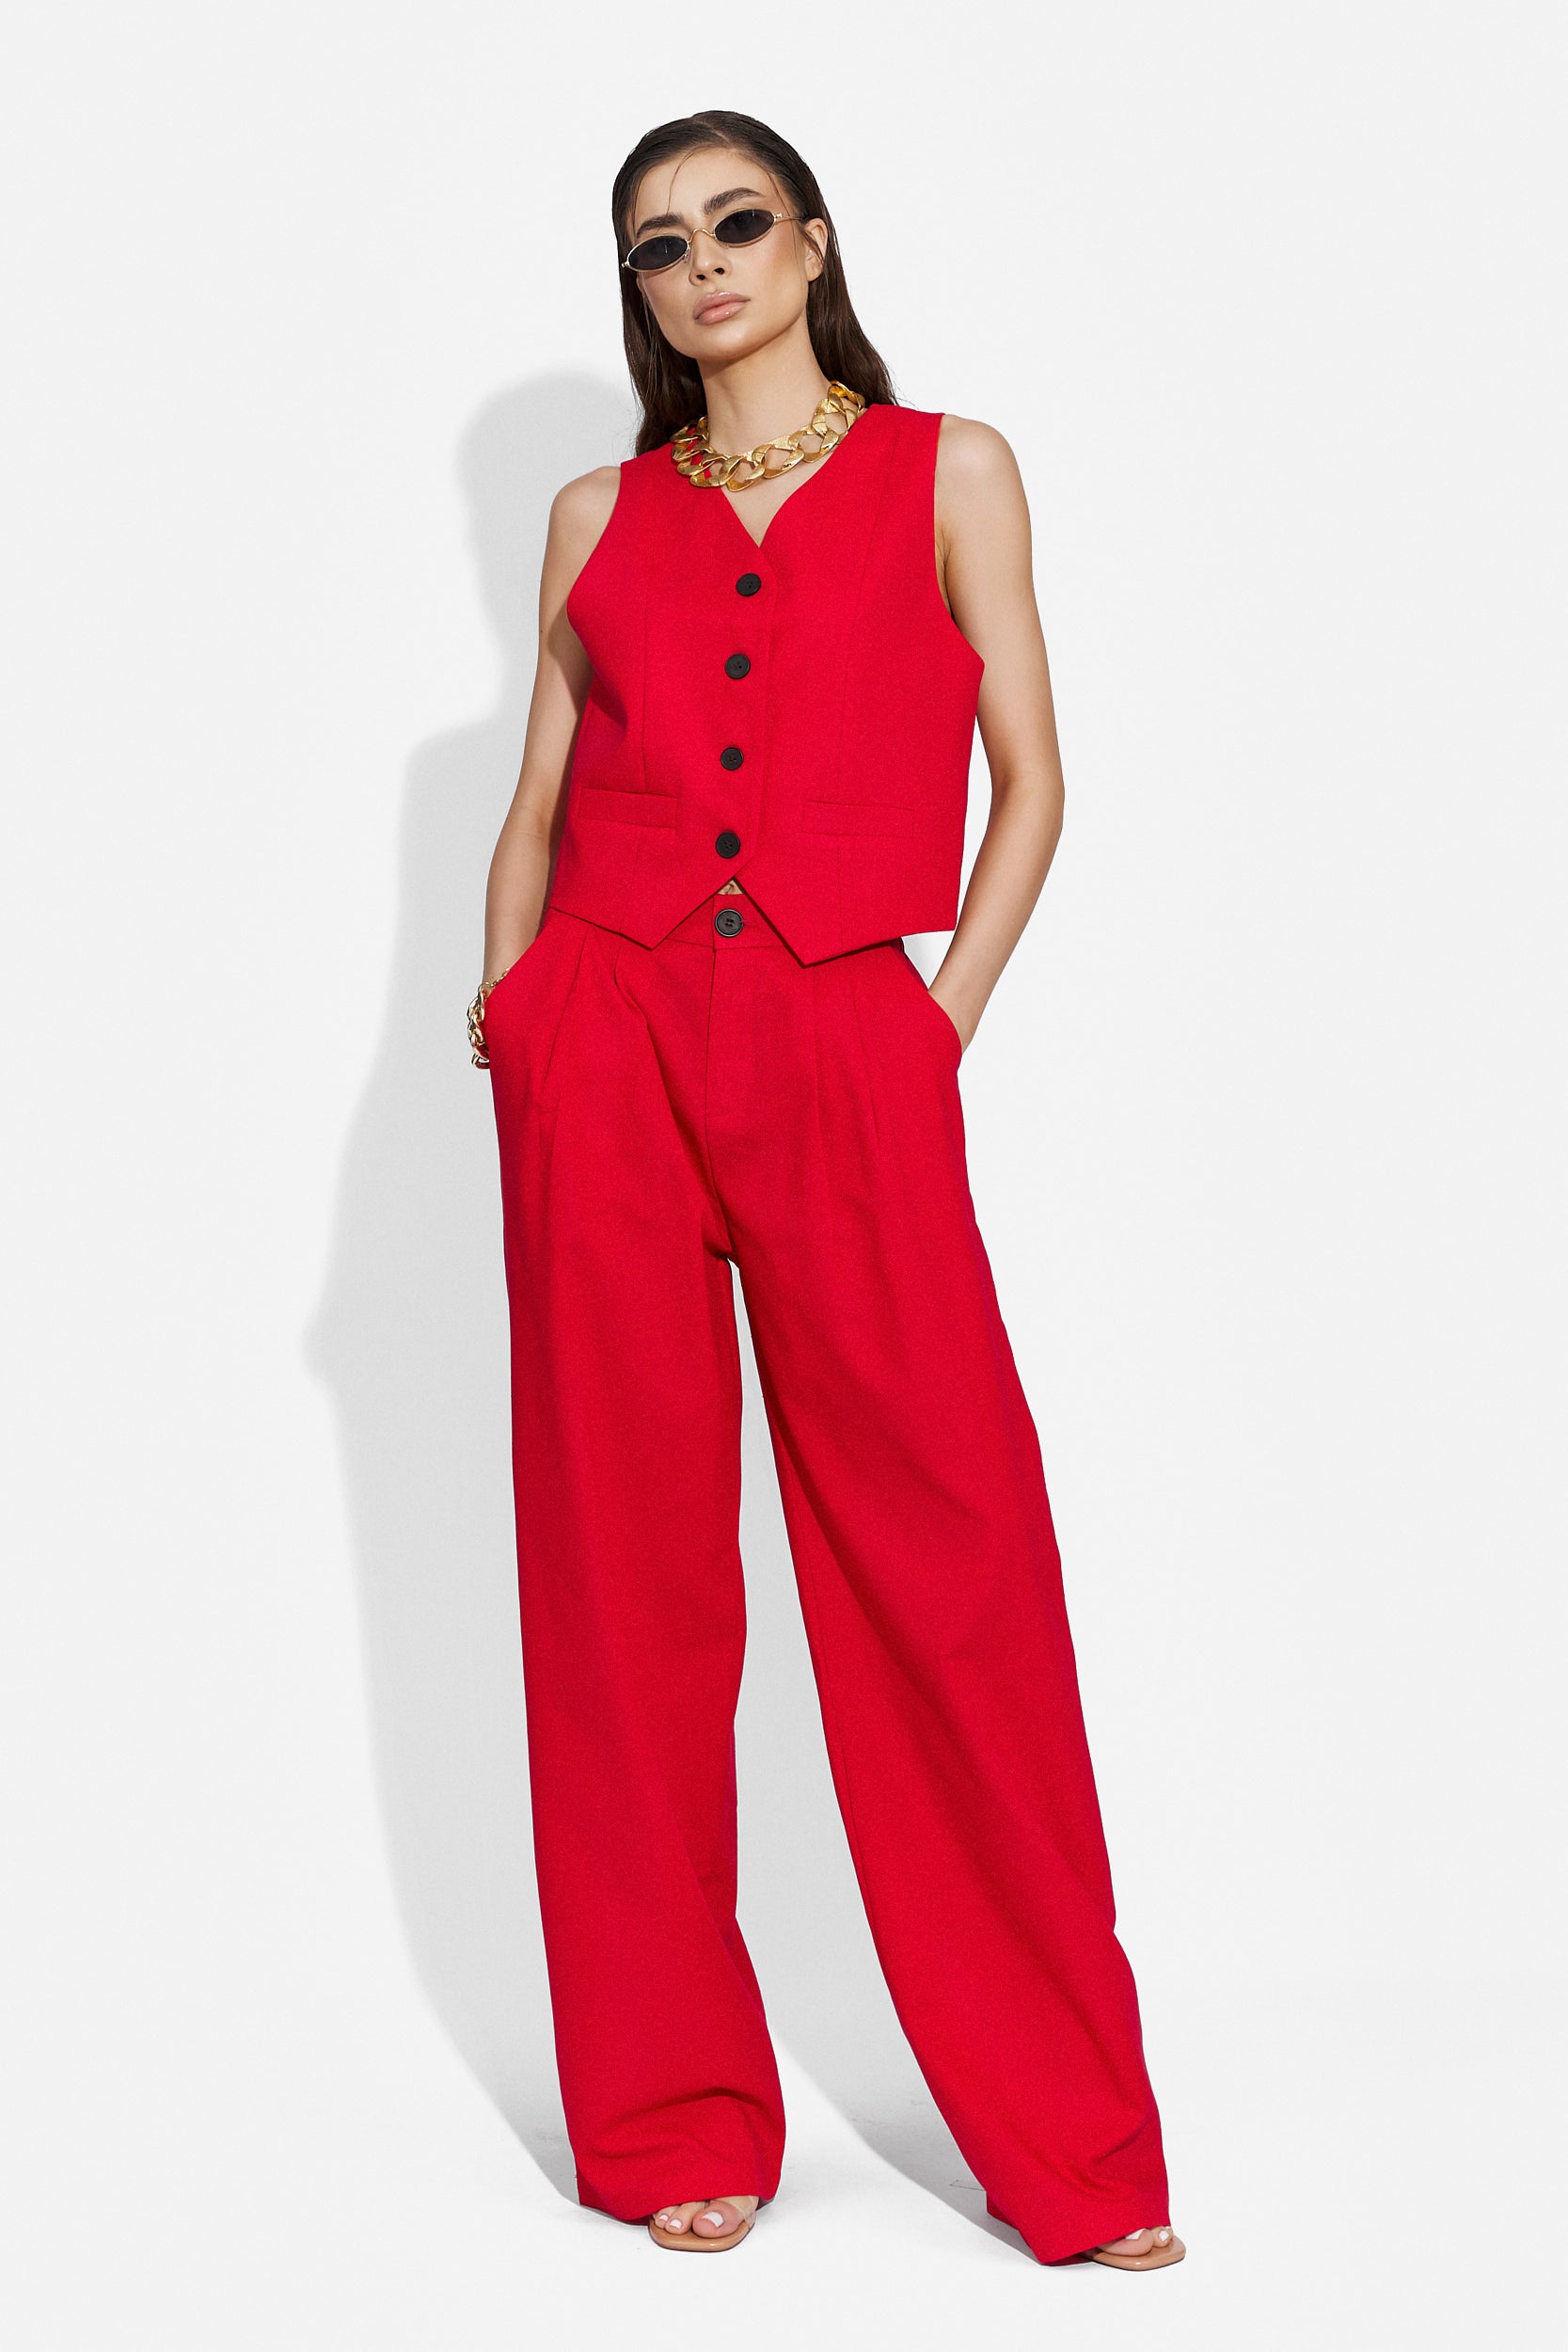 Velasy Bogas червен ежедневен дамски панталон костюм